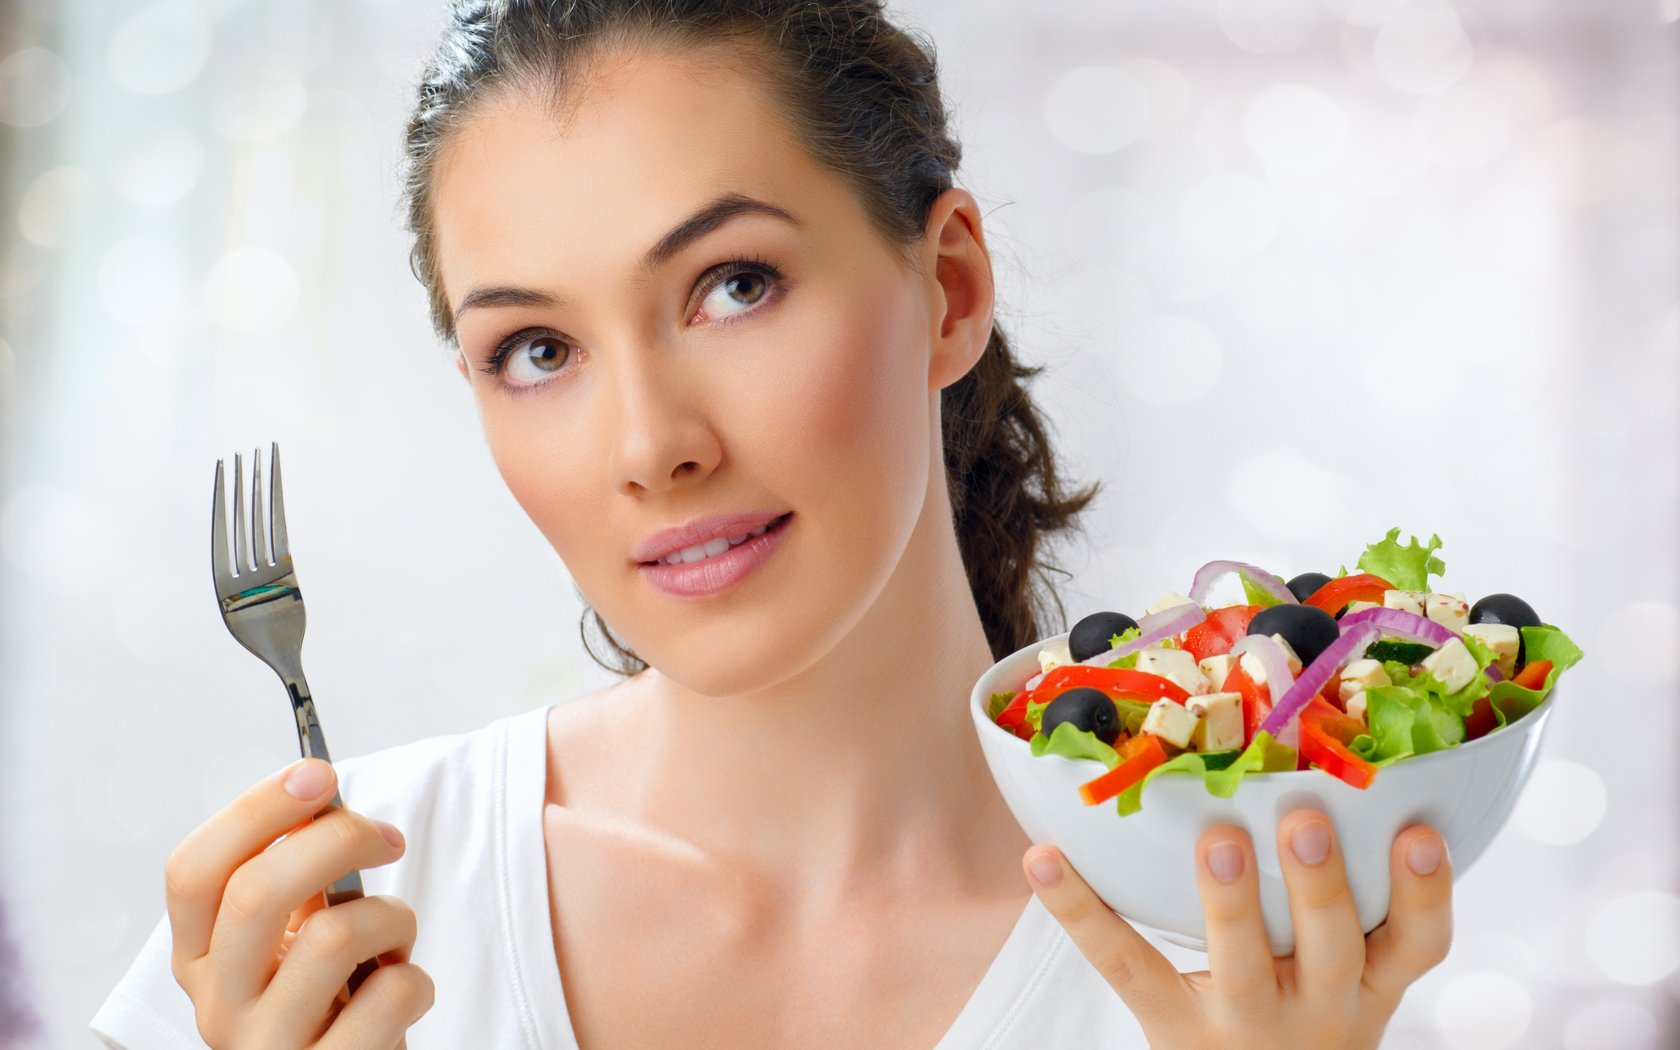 Белковая диета для женщин при эко, список продуктов и примерное меню